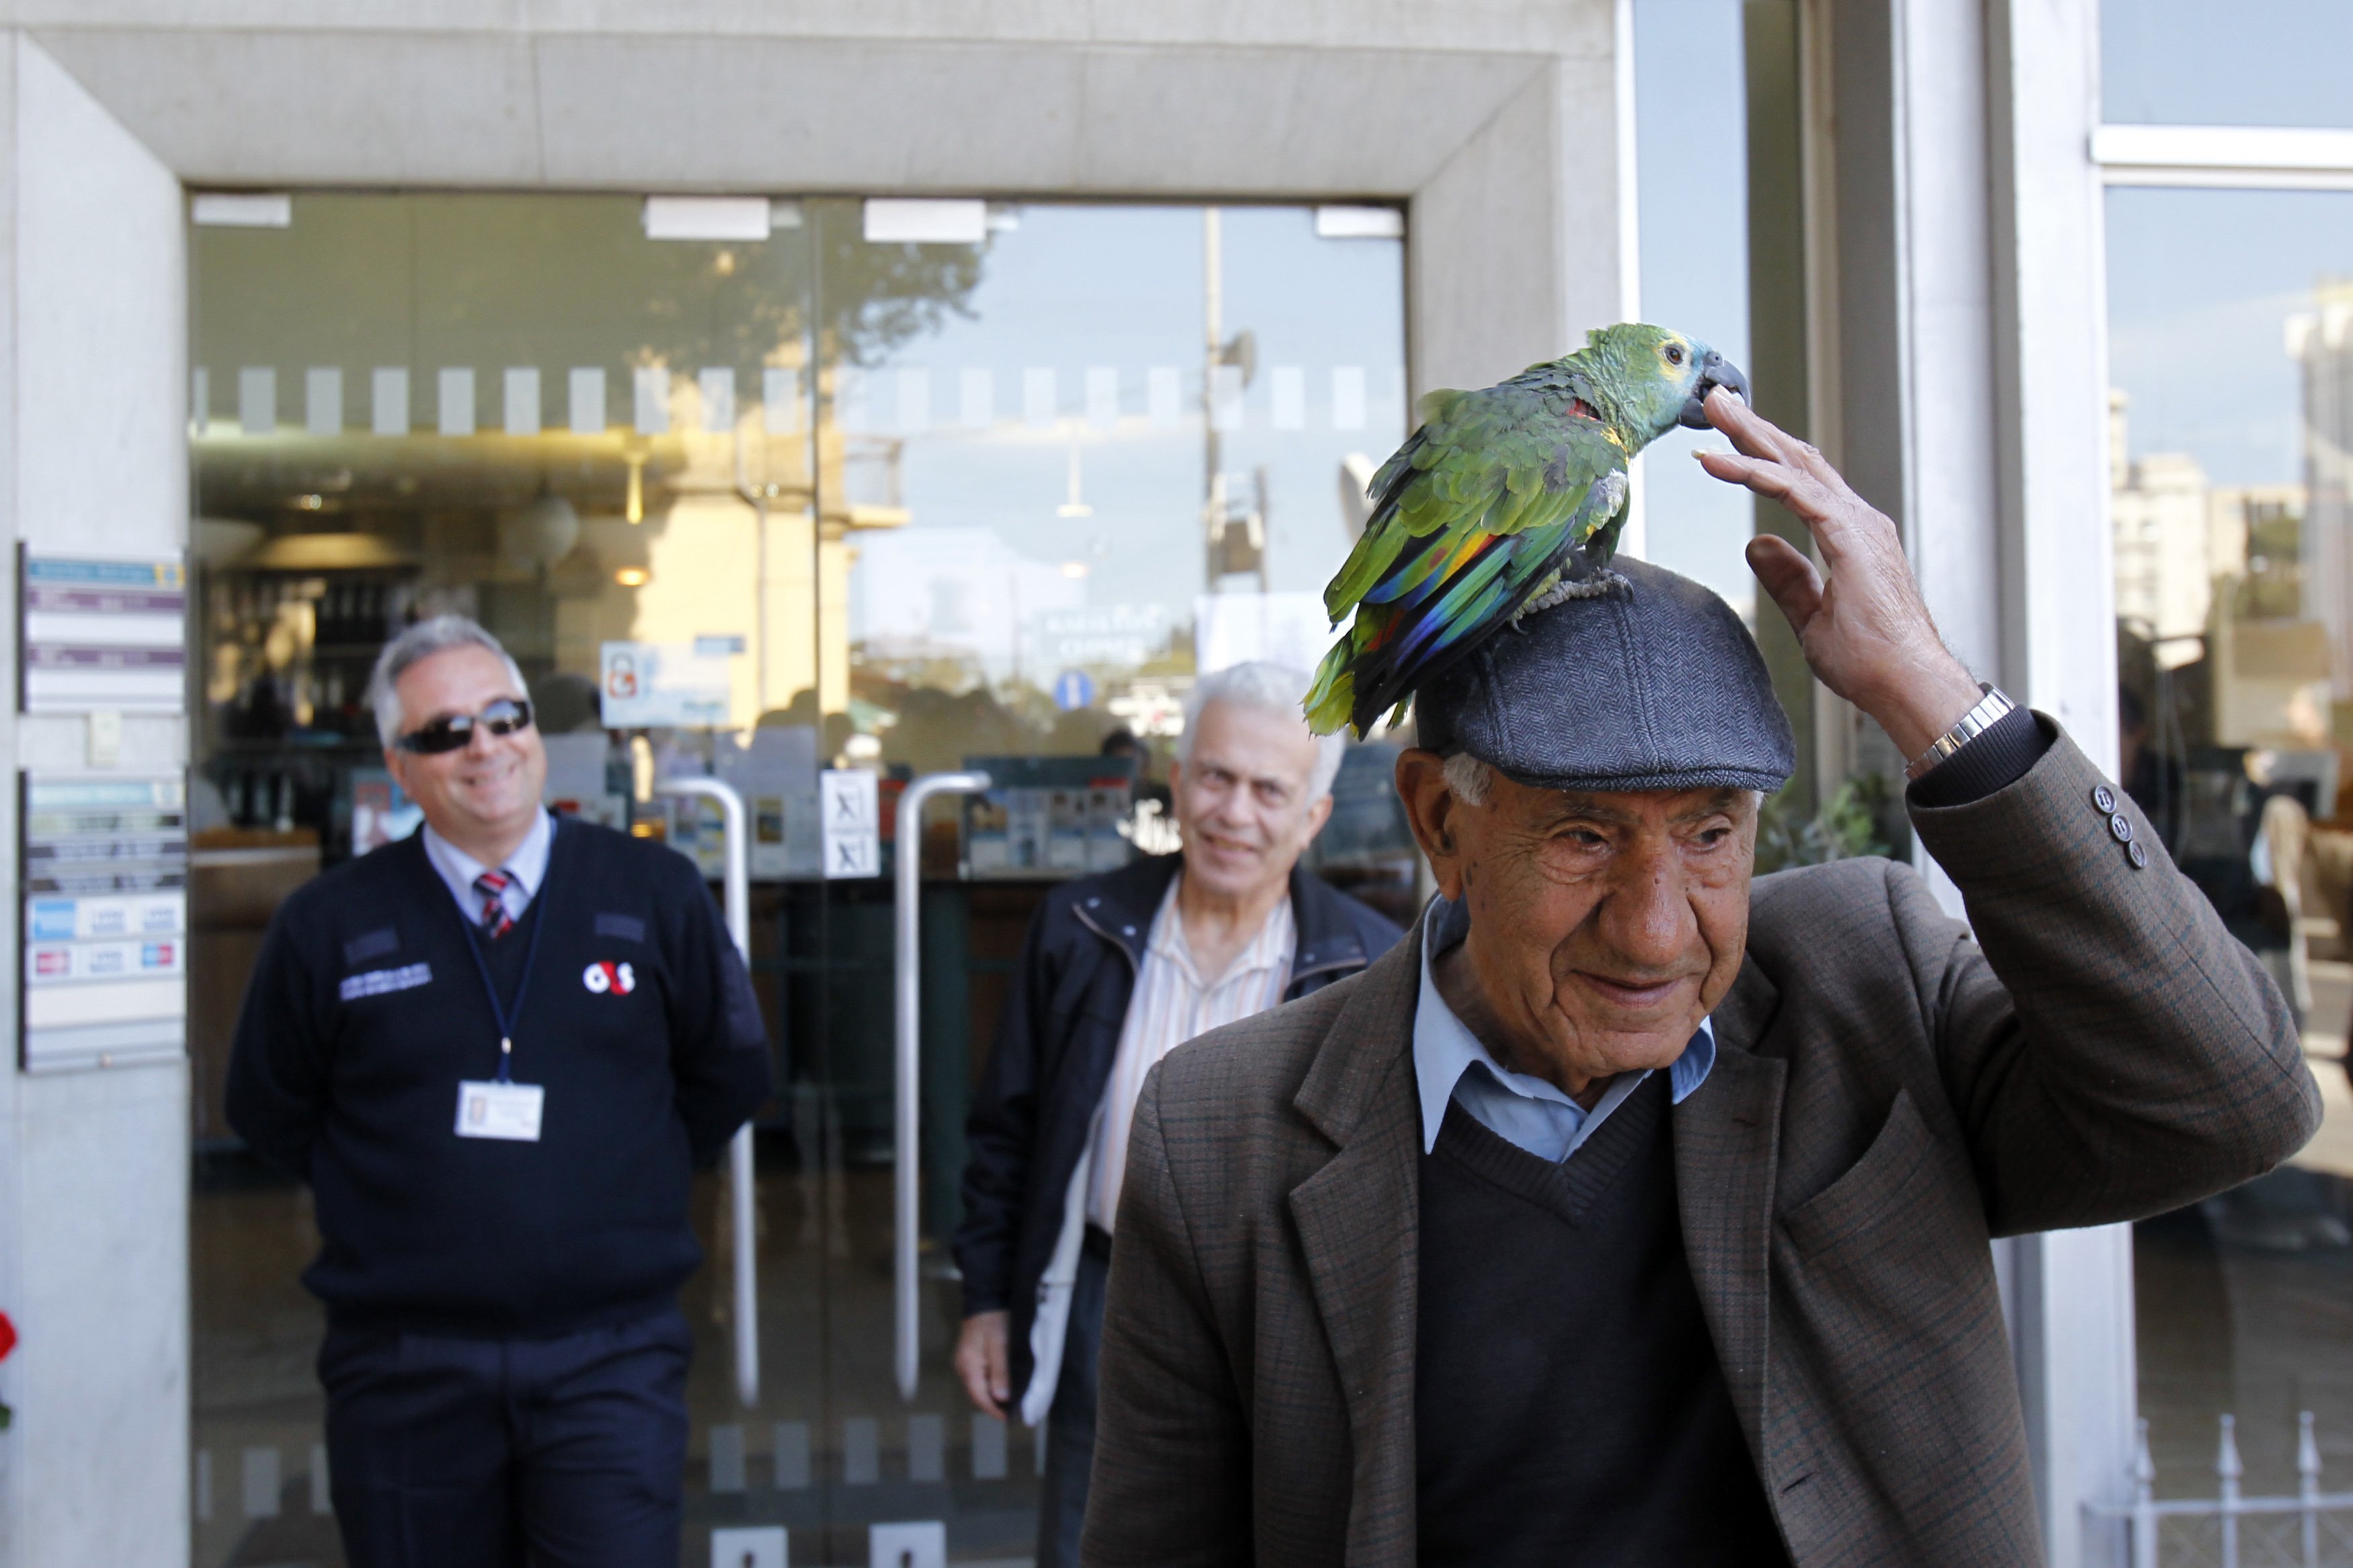 Κύπρος: Πήγε με τον παπαγάλο του στην τράπεζα! – ΦΩΤΟ